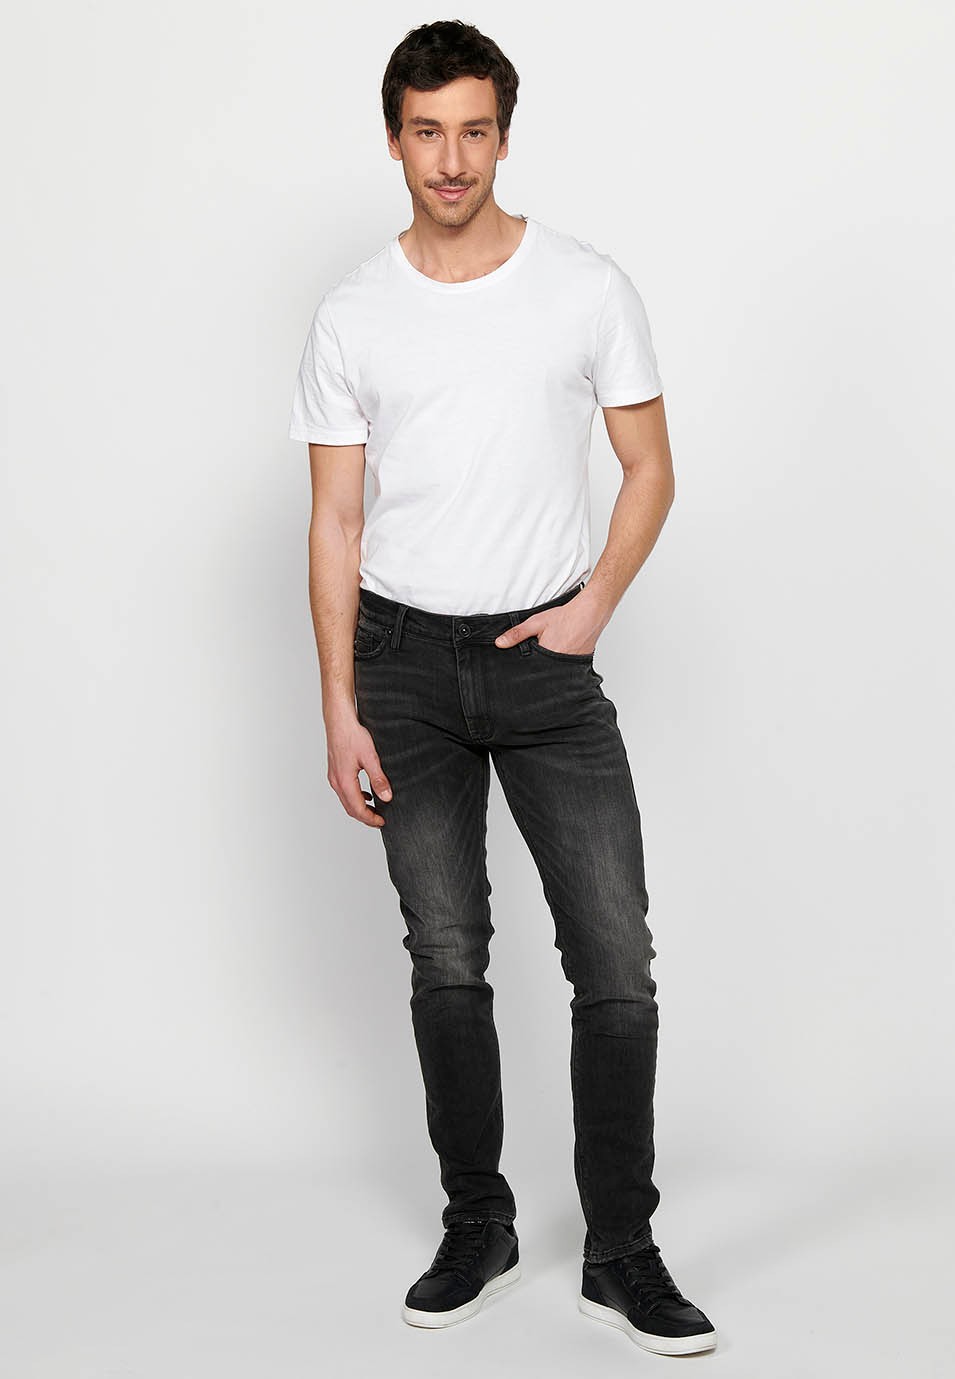 Pantalons texans llarg straigth regular fit amb Tancament davanter amb cremallera i botó de Color Denim Negre per a Home